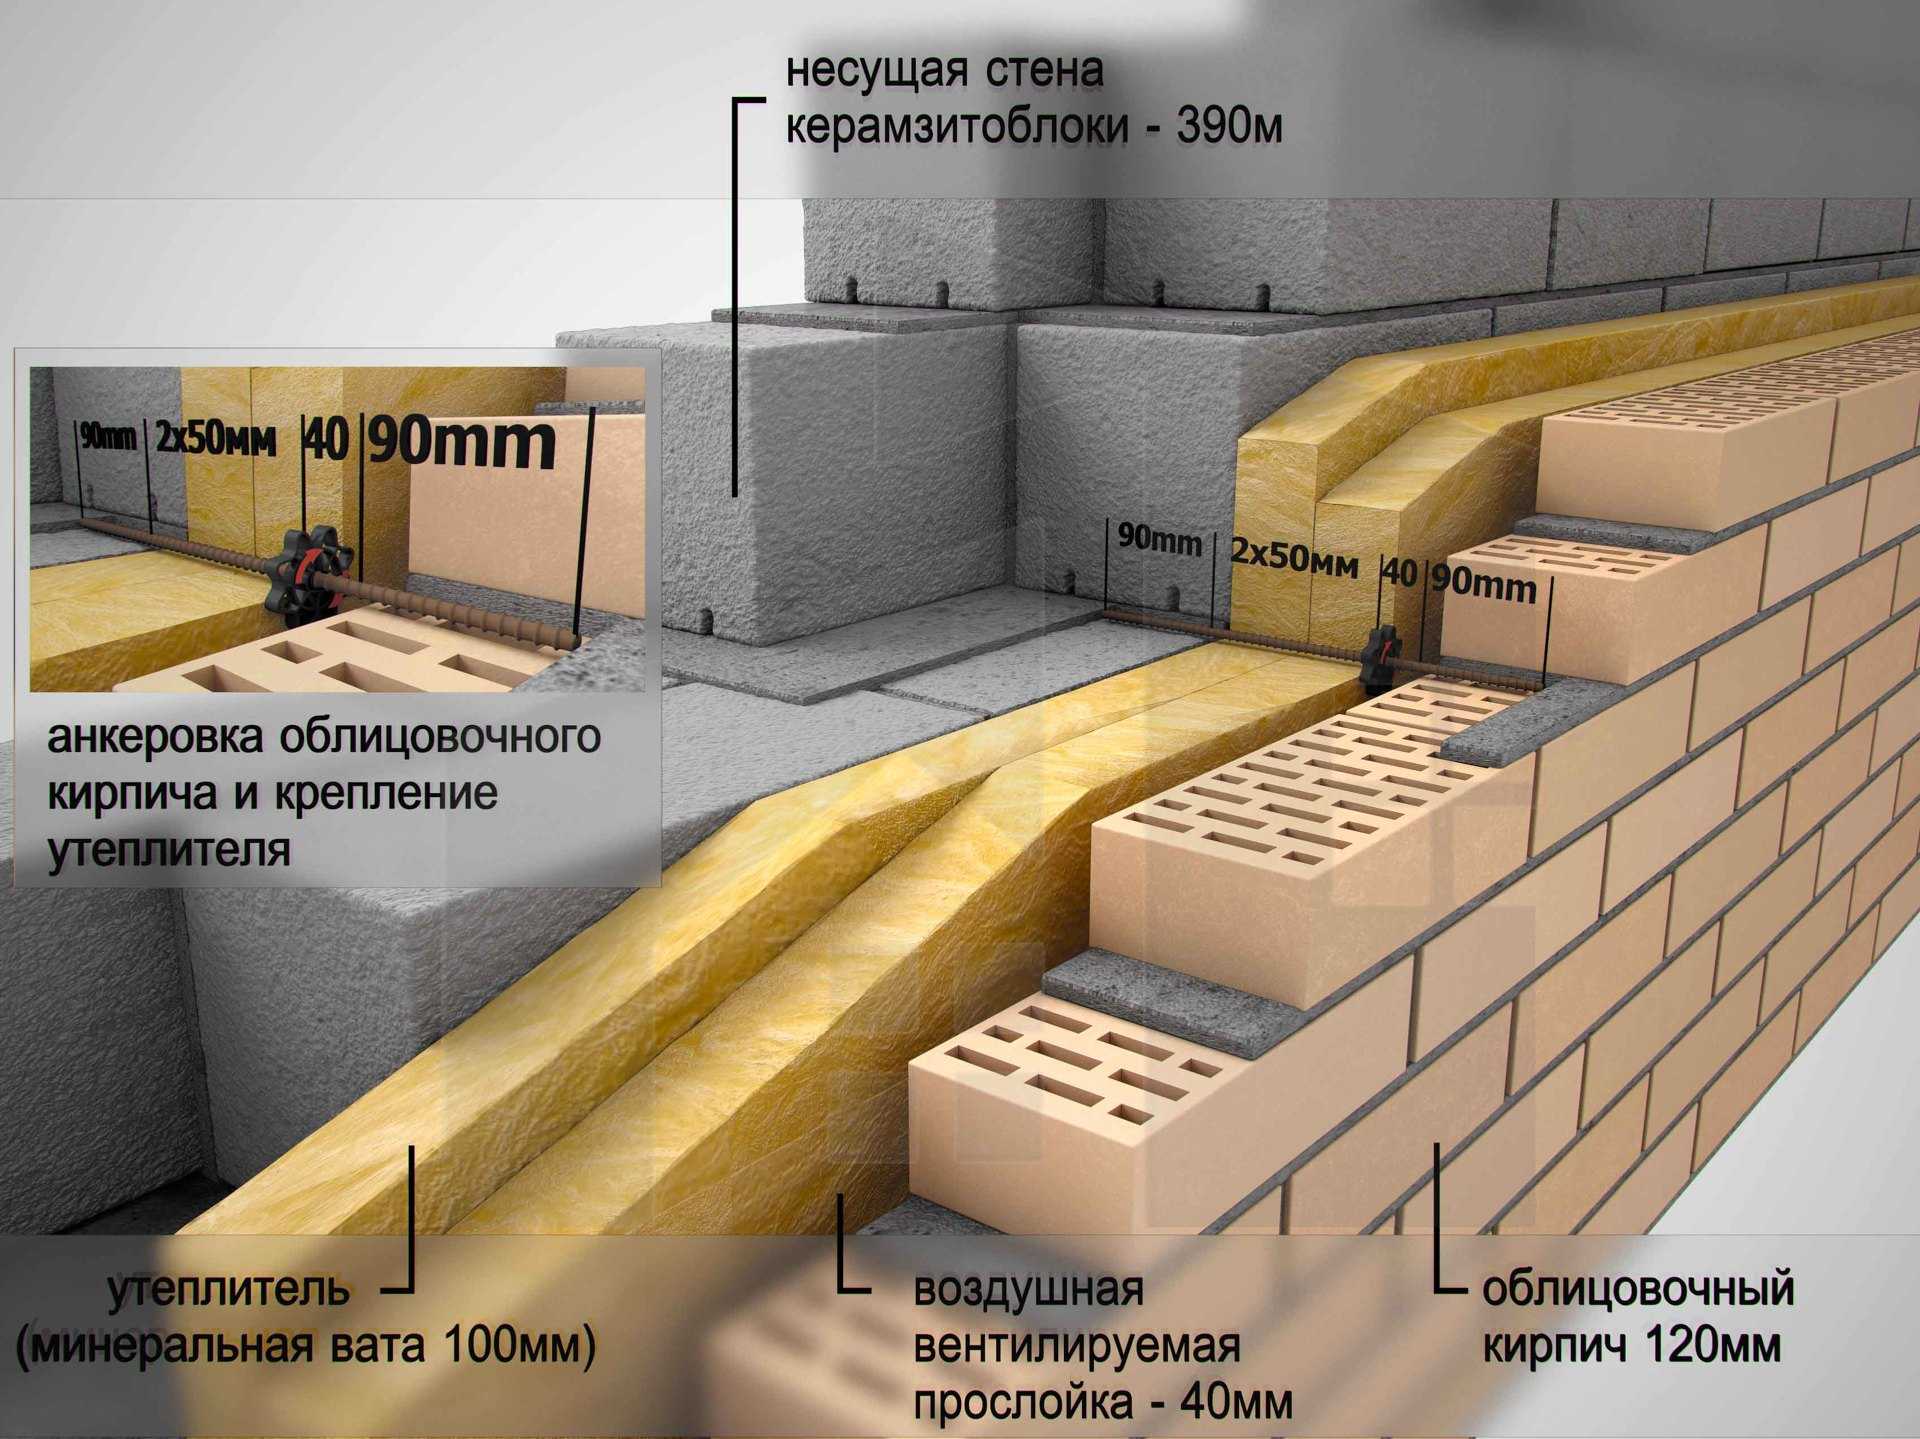 Плюсы и минусы домов из керамзитобетонных блоков, а также положительные и отрицательные отзывы владельцев керамзитных зданий | baskal45.ru